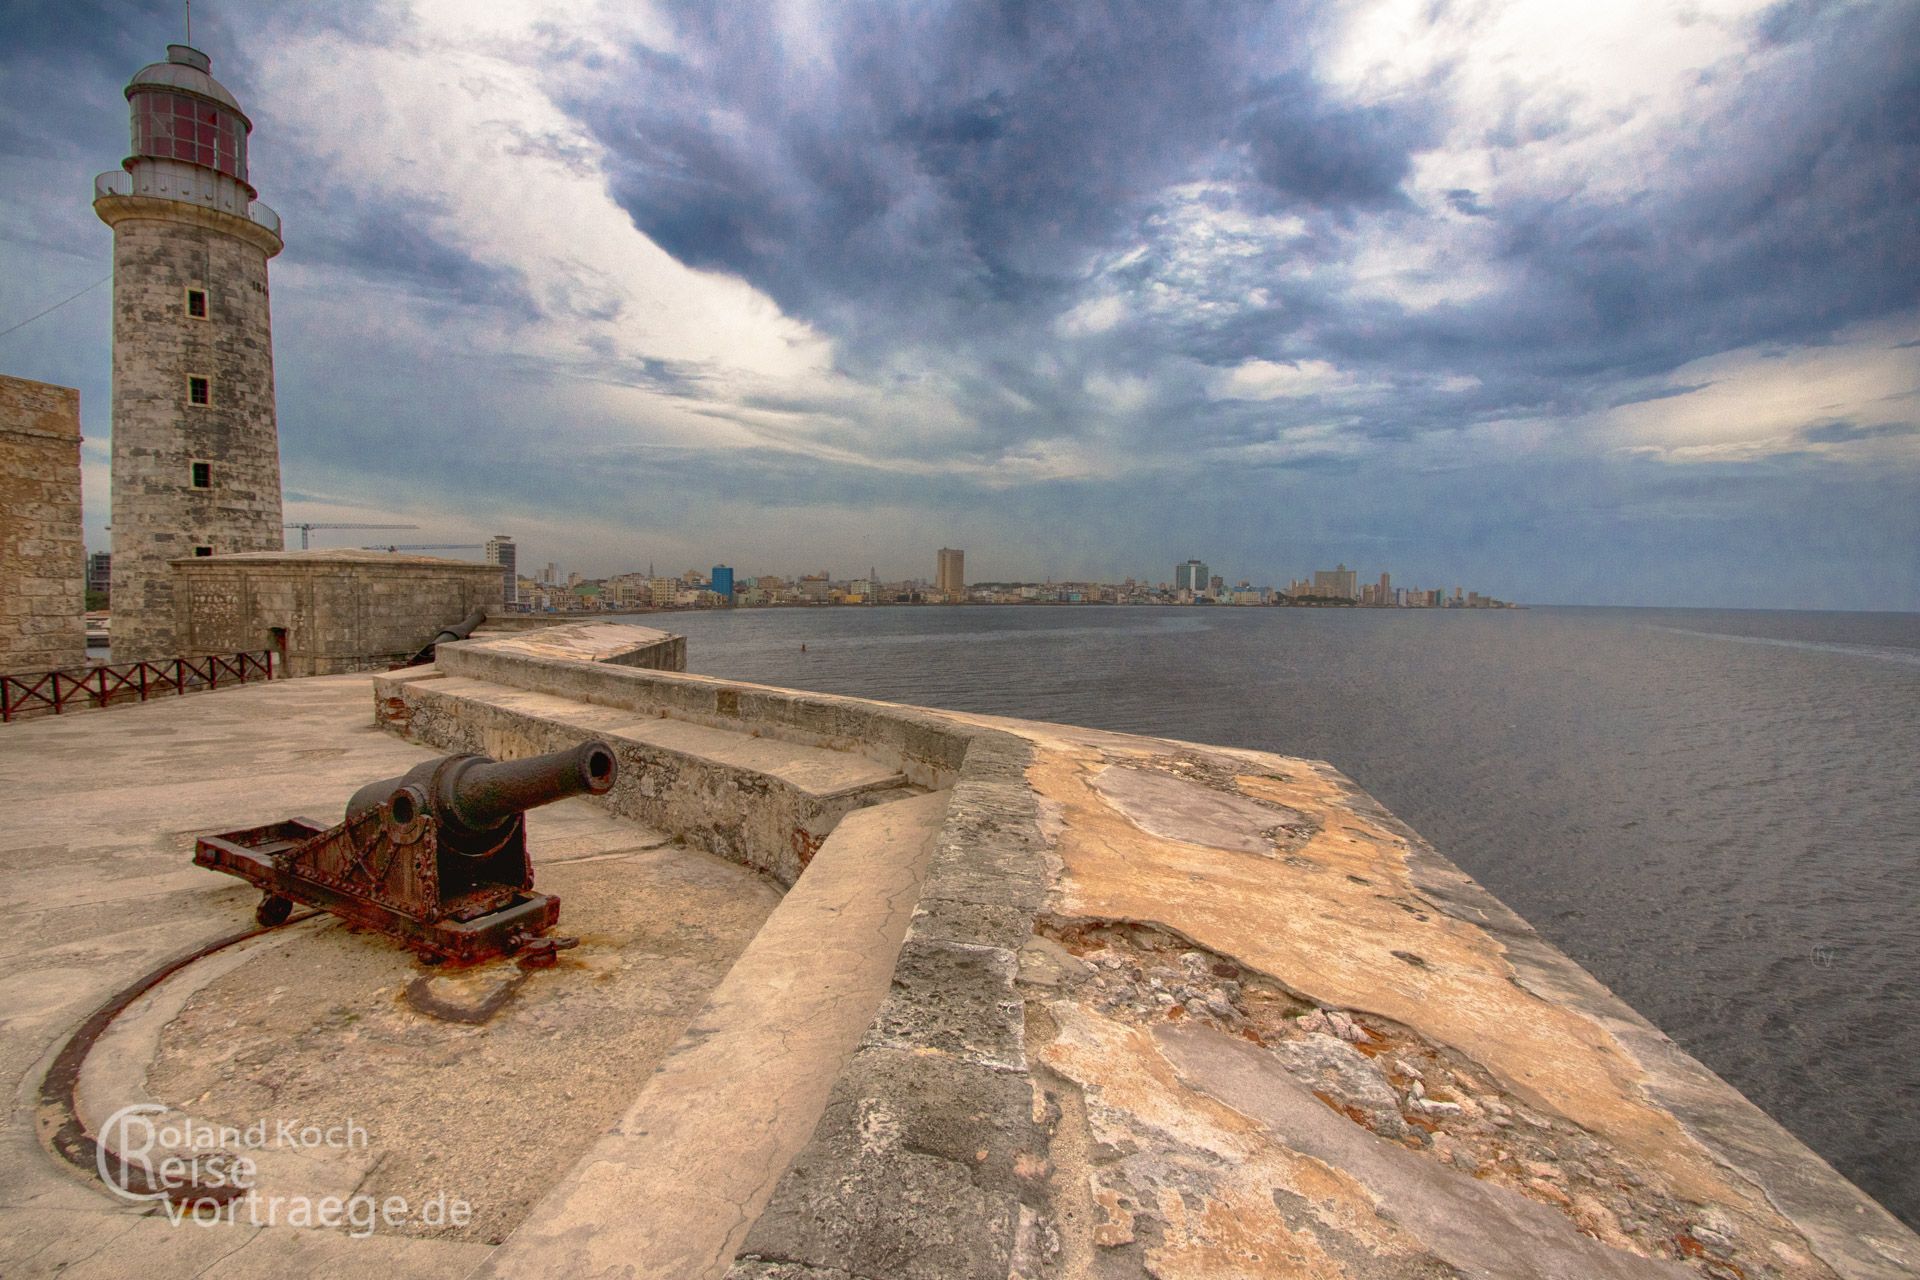 Cuba, Havana, Castillo de los tres Reyes del Morro